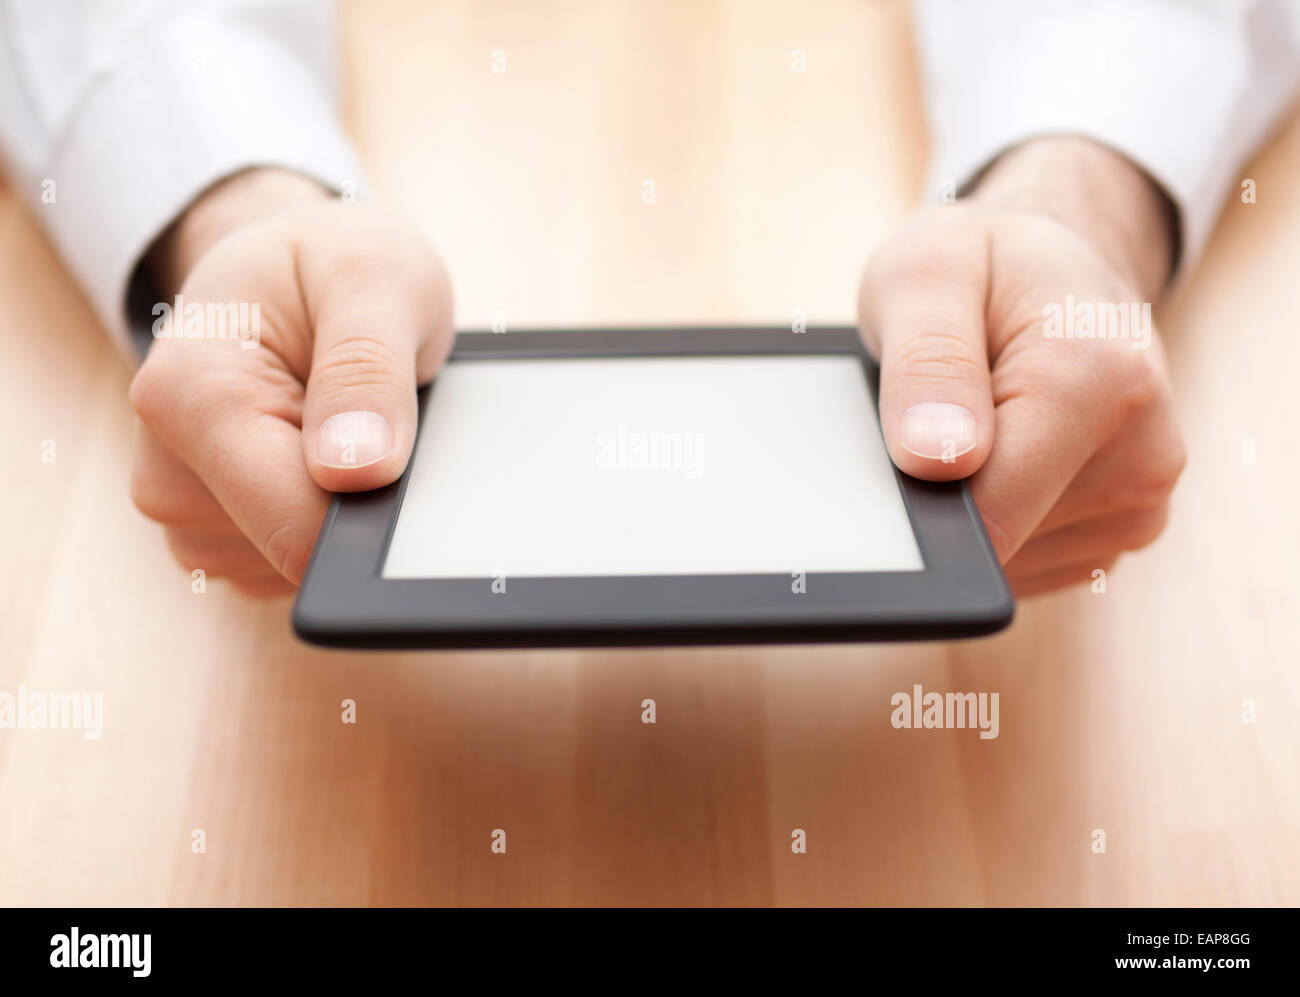 Tablet oder e-Book Reader in den Händen auf Holz Hintergrund Stockfoto